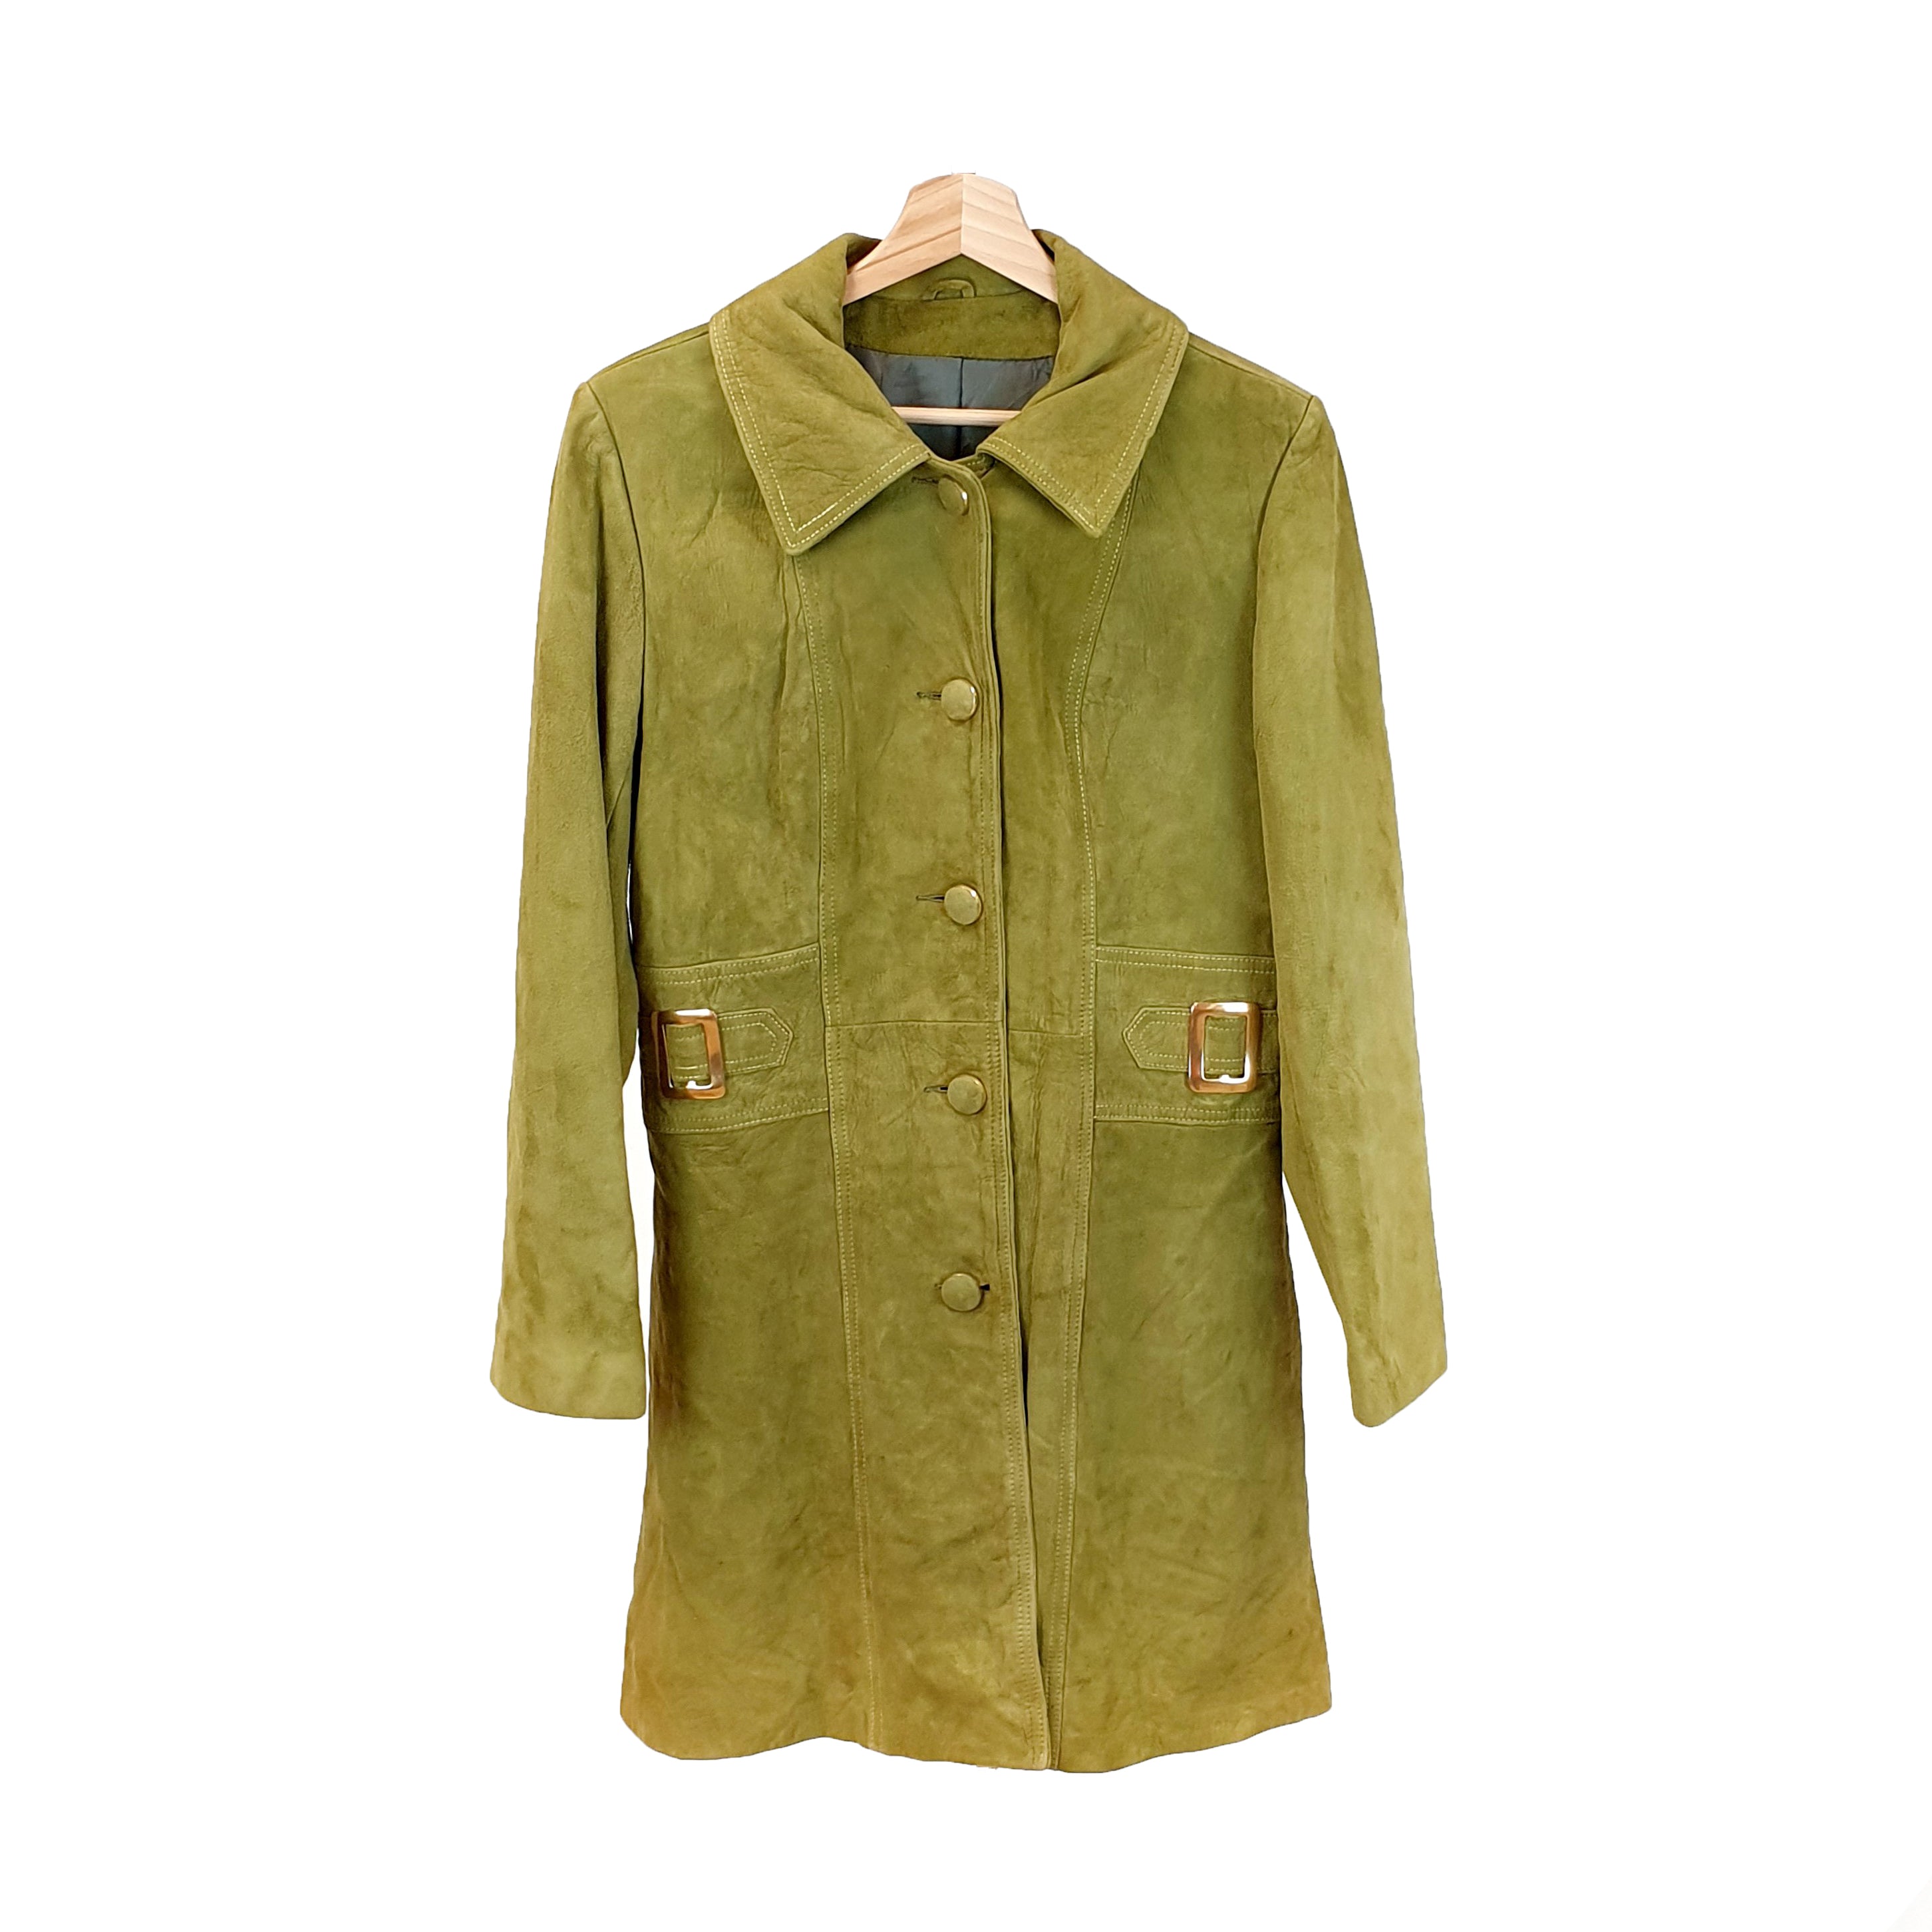 Green 70's Aesthetic Suede Coat